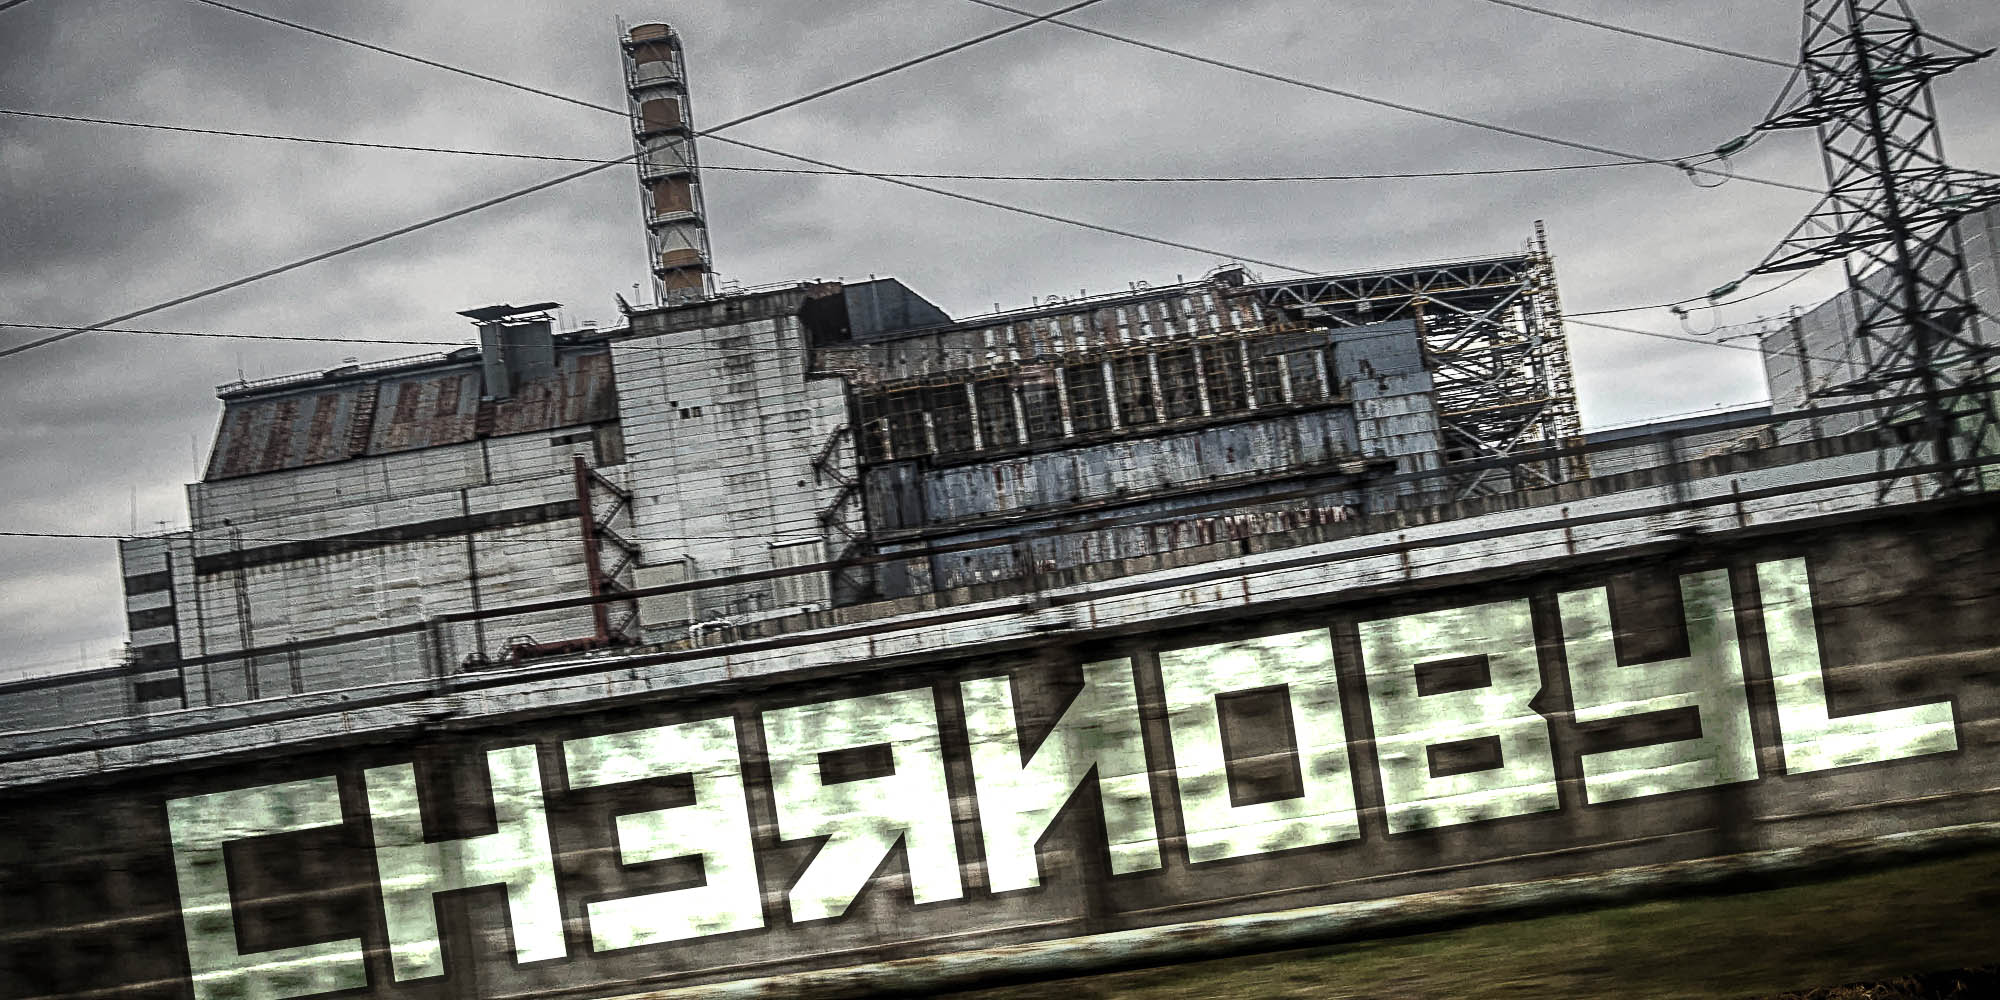 Μαύρη επέτειος η σημερινή. 30 χρόνια από το μεγαλύτερο ραδιενεργό ατύχημα του Τσέρνομπιλ… (φωτογραφικό υλικό πριν και μετά)